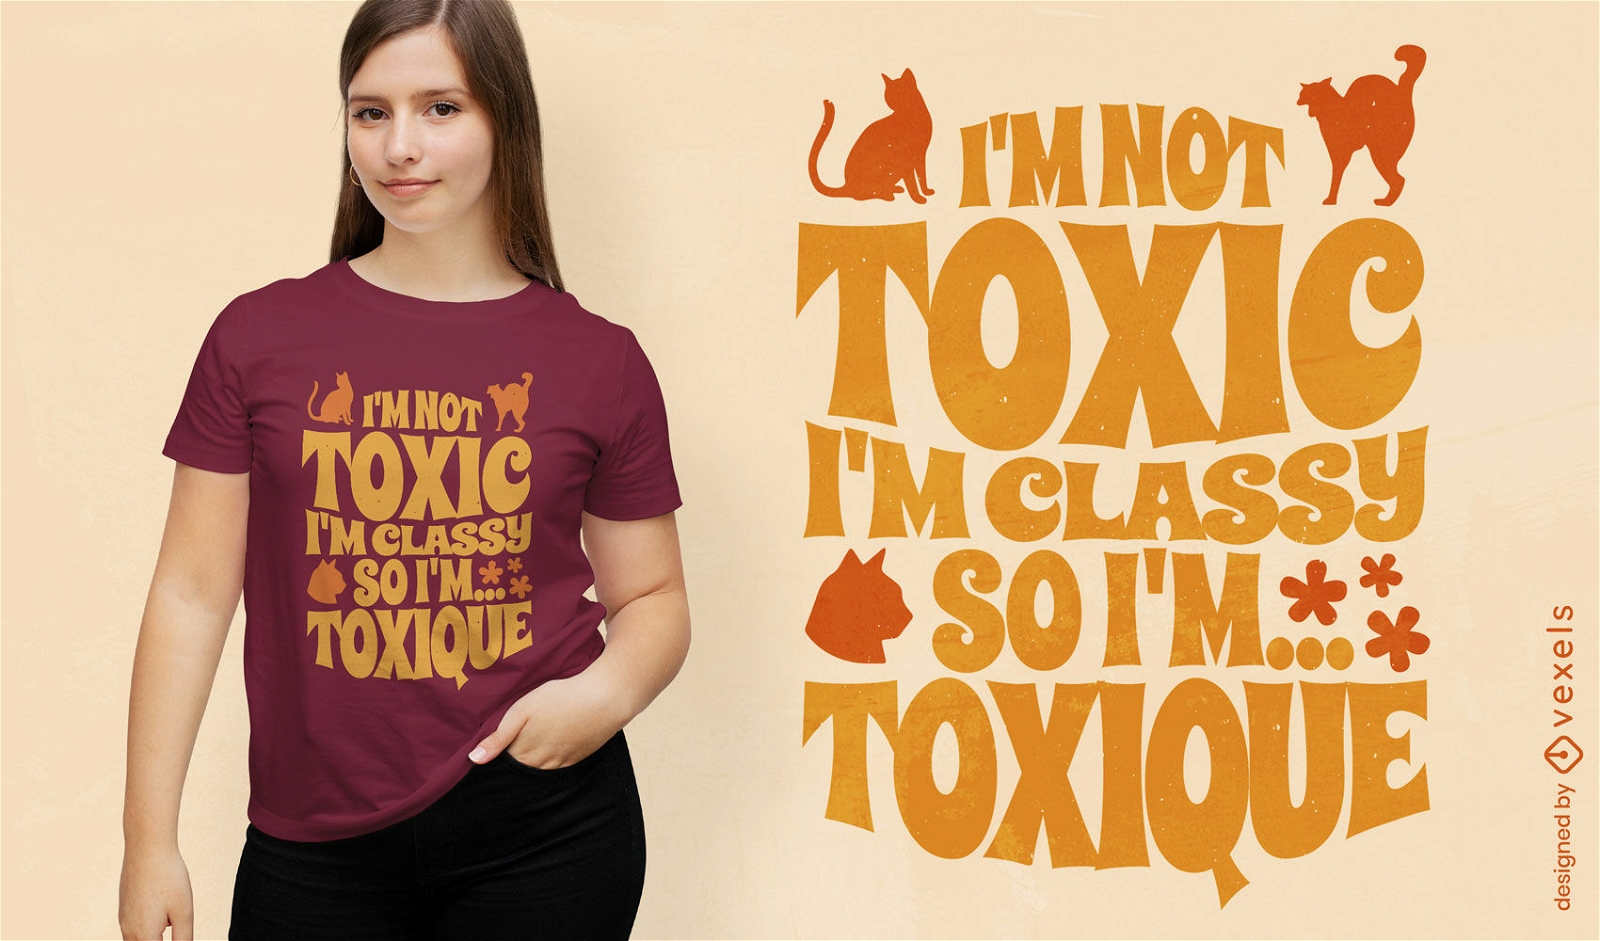 Witty feline humor t-shirt design